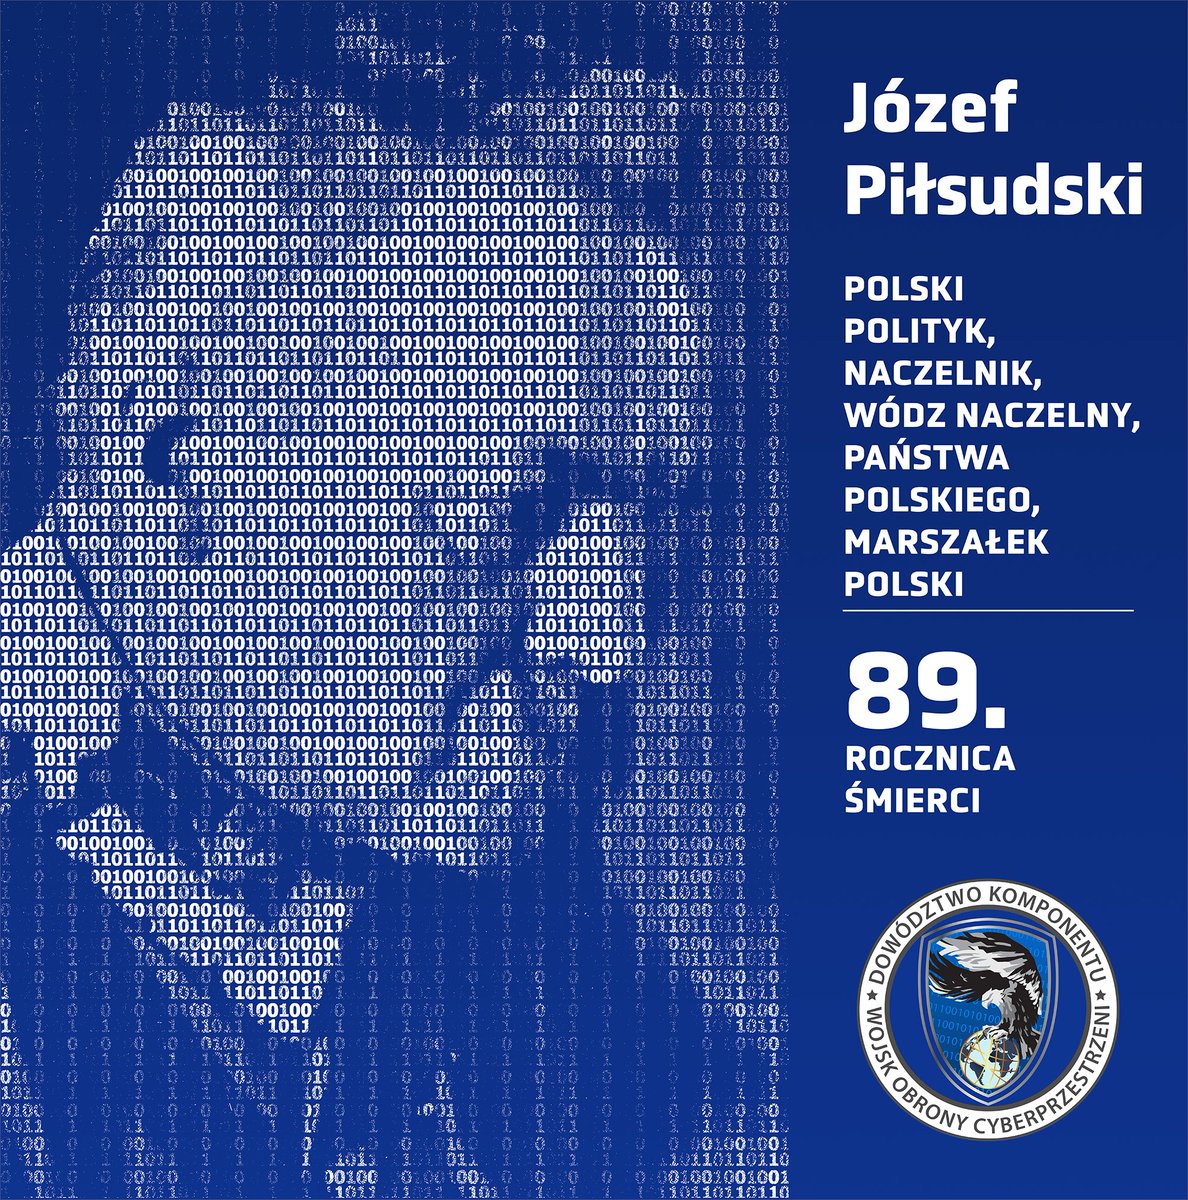 Dziś obchodzimy 89. rocznicę śmierci Józefa Piłsudskiego, wybitnego polityka i bohatera narodowego. Piłsudski odegrał kluczową rolę w odzyskaniu niepodległości przez Polskę w 1918 roku, a następnie pełnił funkcje Marszałka Polski i Premiera dwukrotnie. Jego wpływ na politykę…